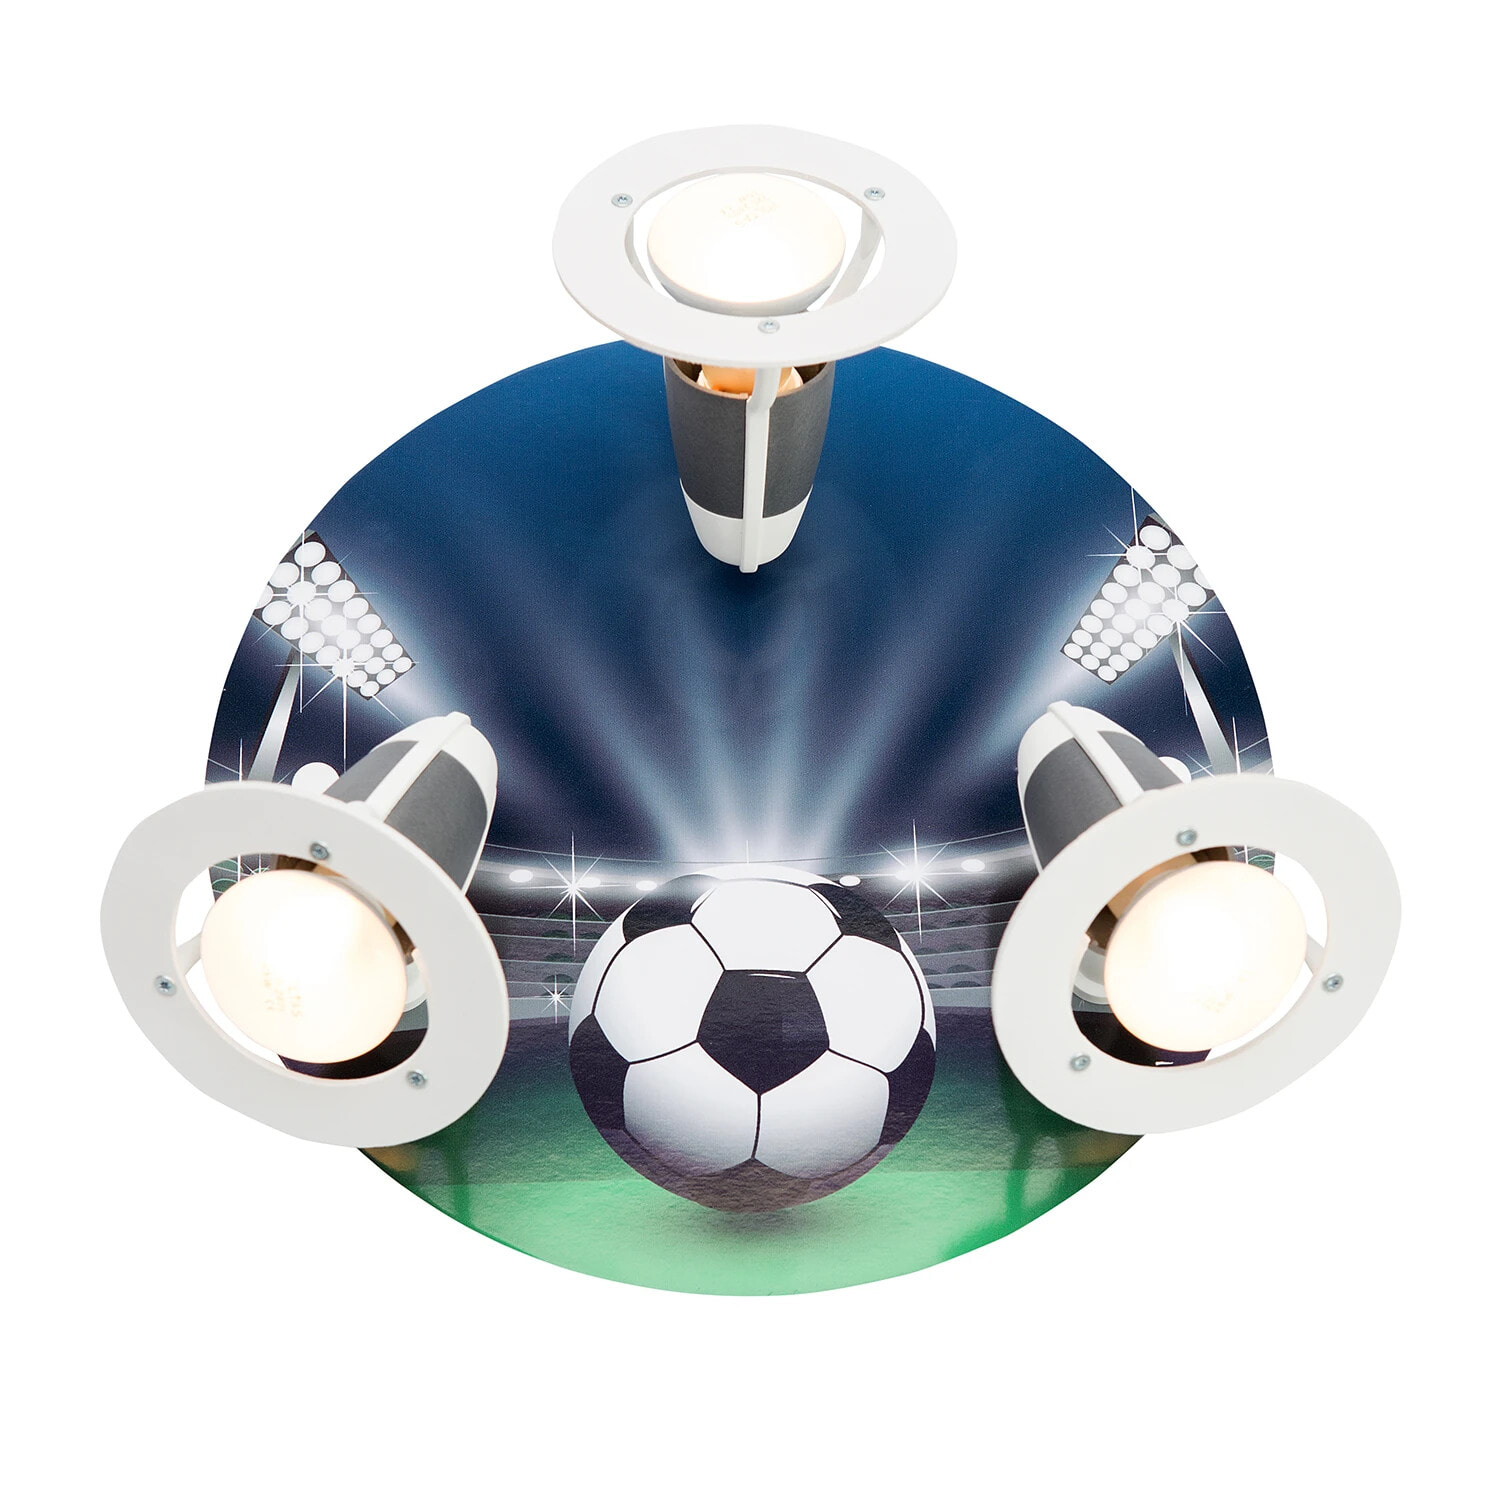 Потолочный светильник Elobra с принтом футбольного поля